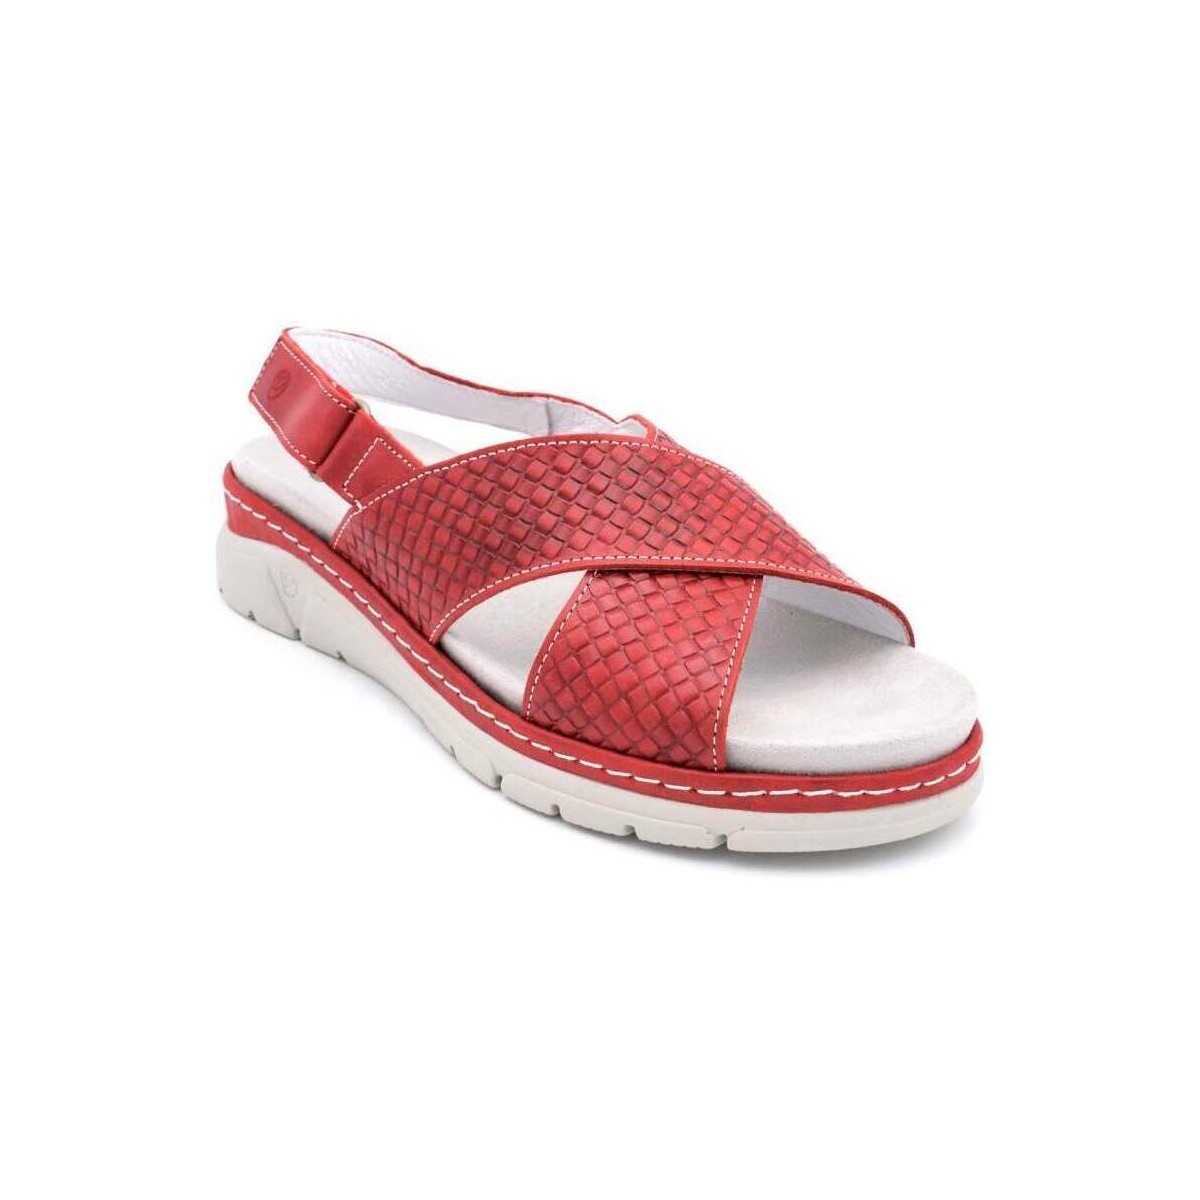 Zapatos Mujer Sandalias Suave 3355 Rojo